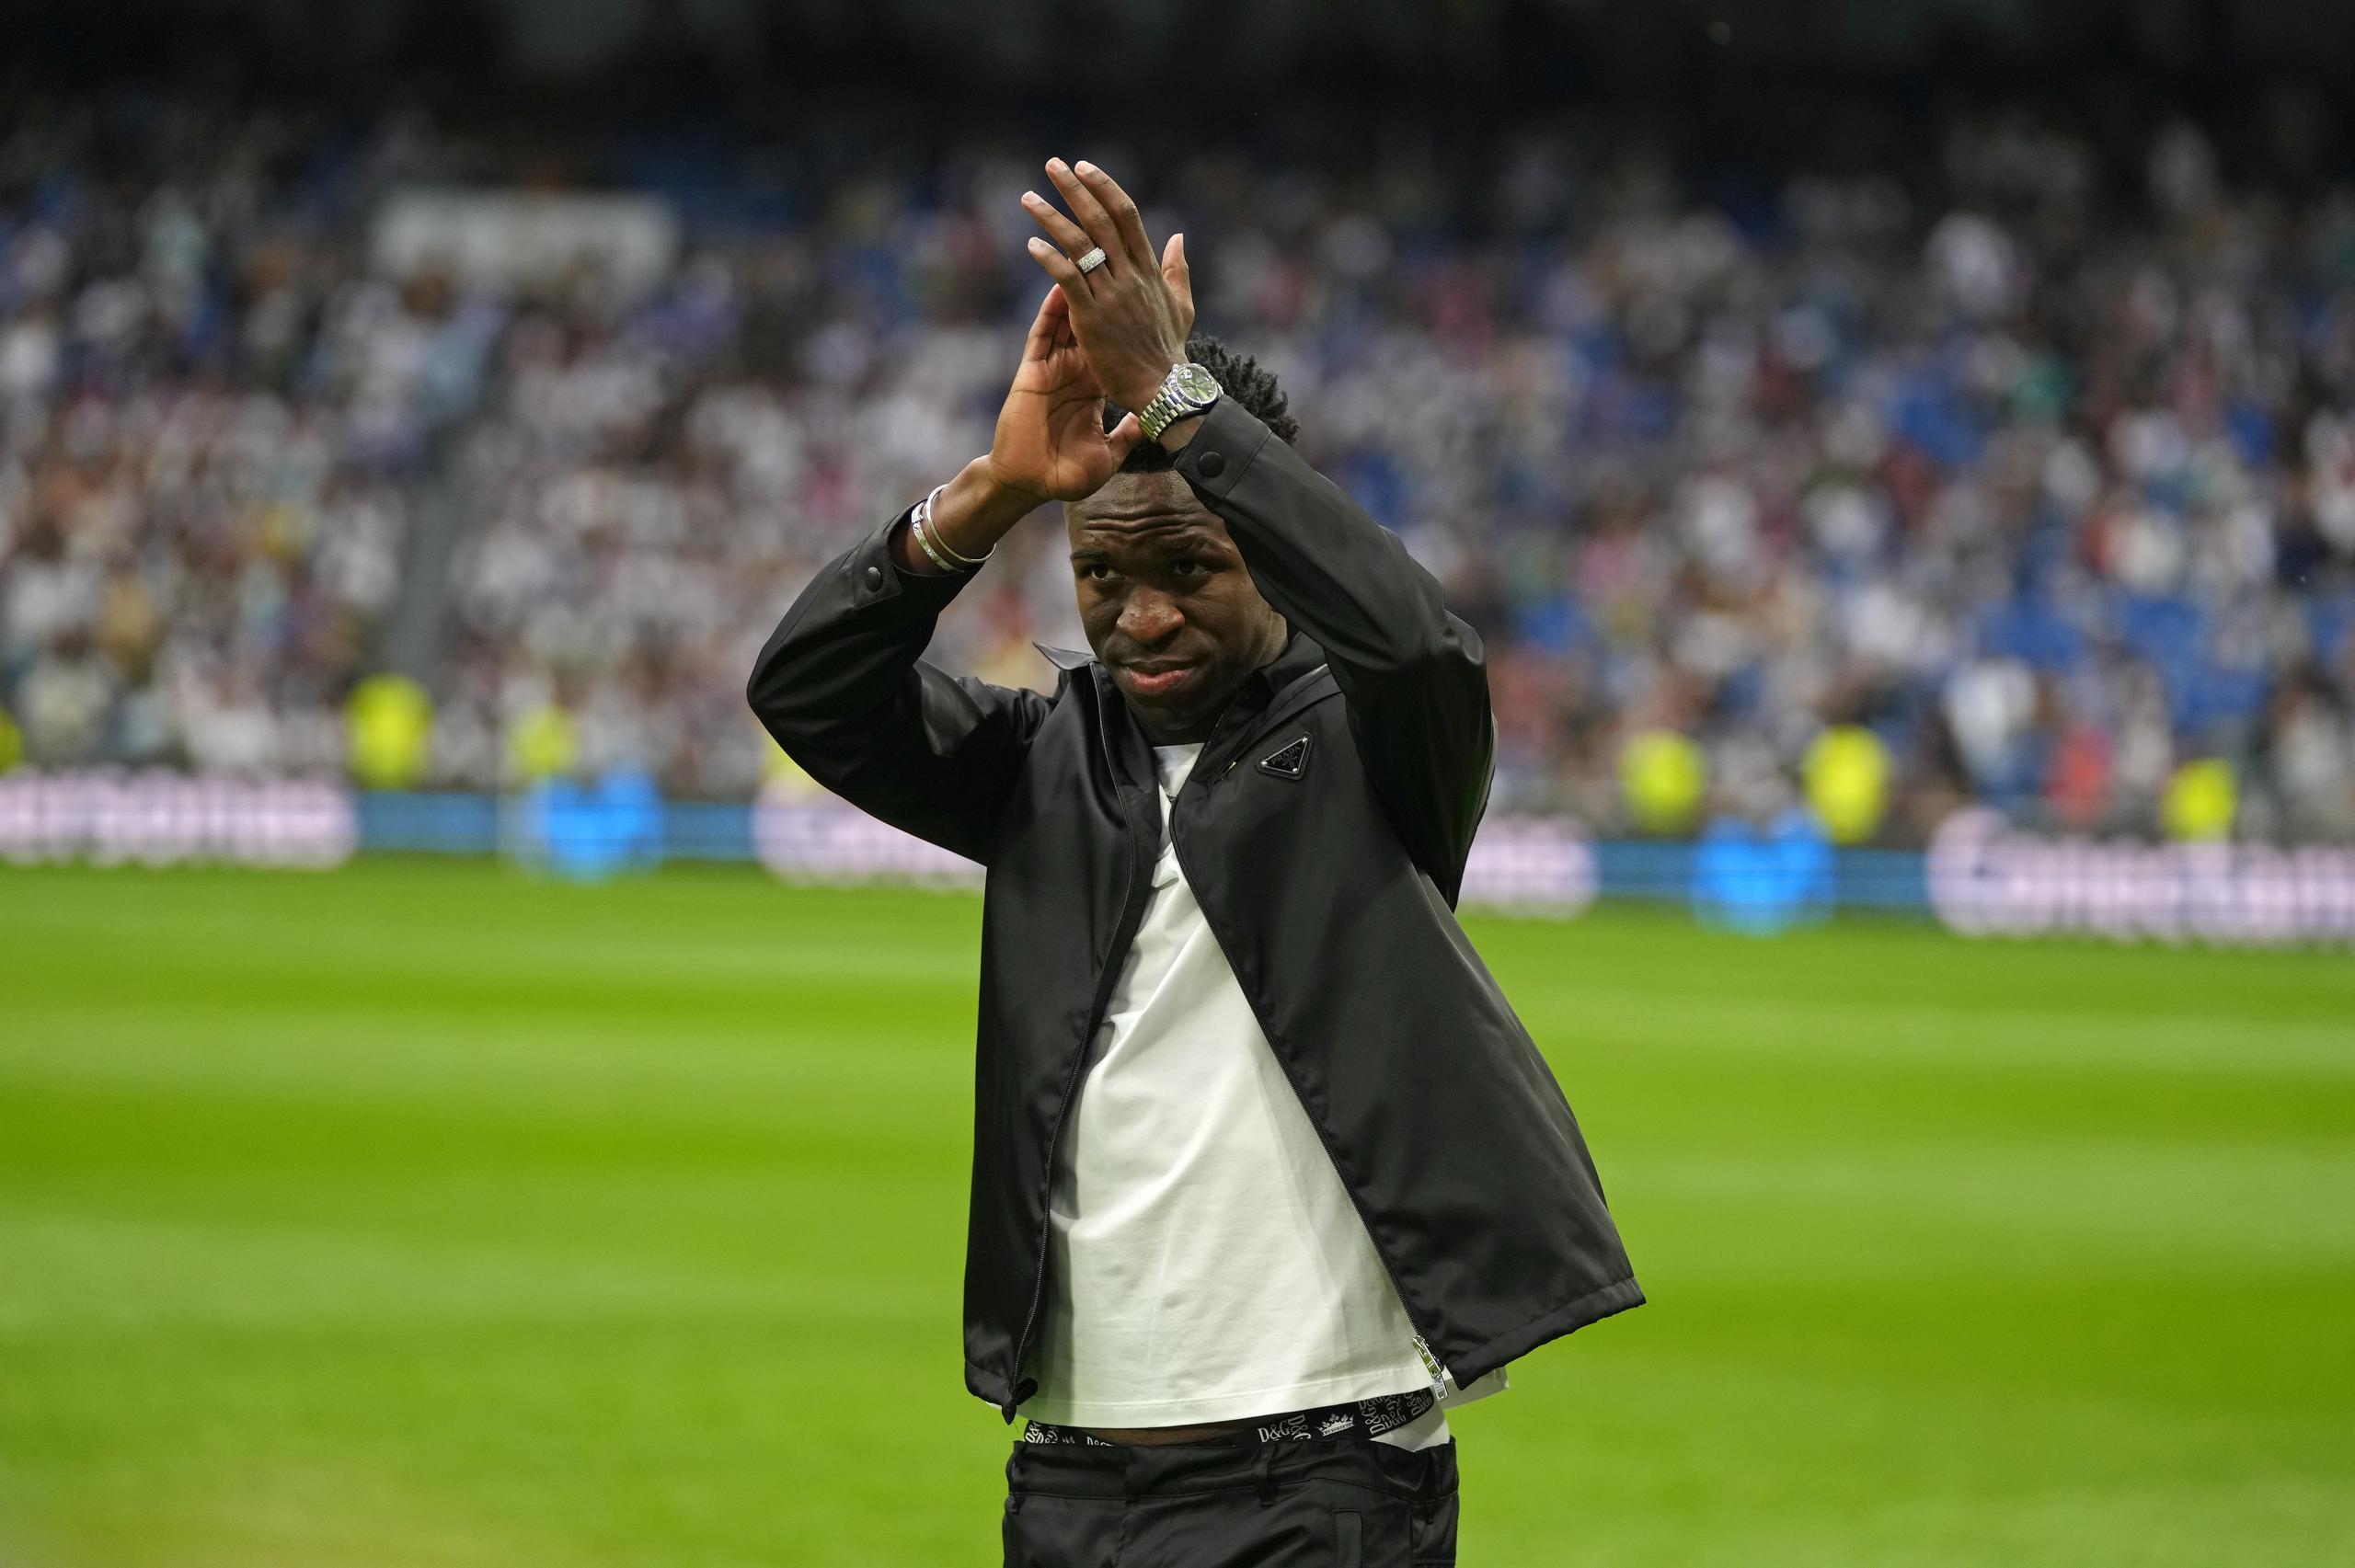 El jugador del Real Madrid Vinícius Júnior aplaude a los espectadores antes de un juego de Liga entre el Real Madrid y el Rayo Vallecano en el estadio Santiago Bernabéu en Madrid, España, el miércoles 24 de mayo de 2023.